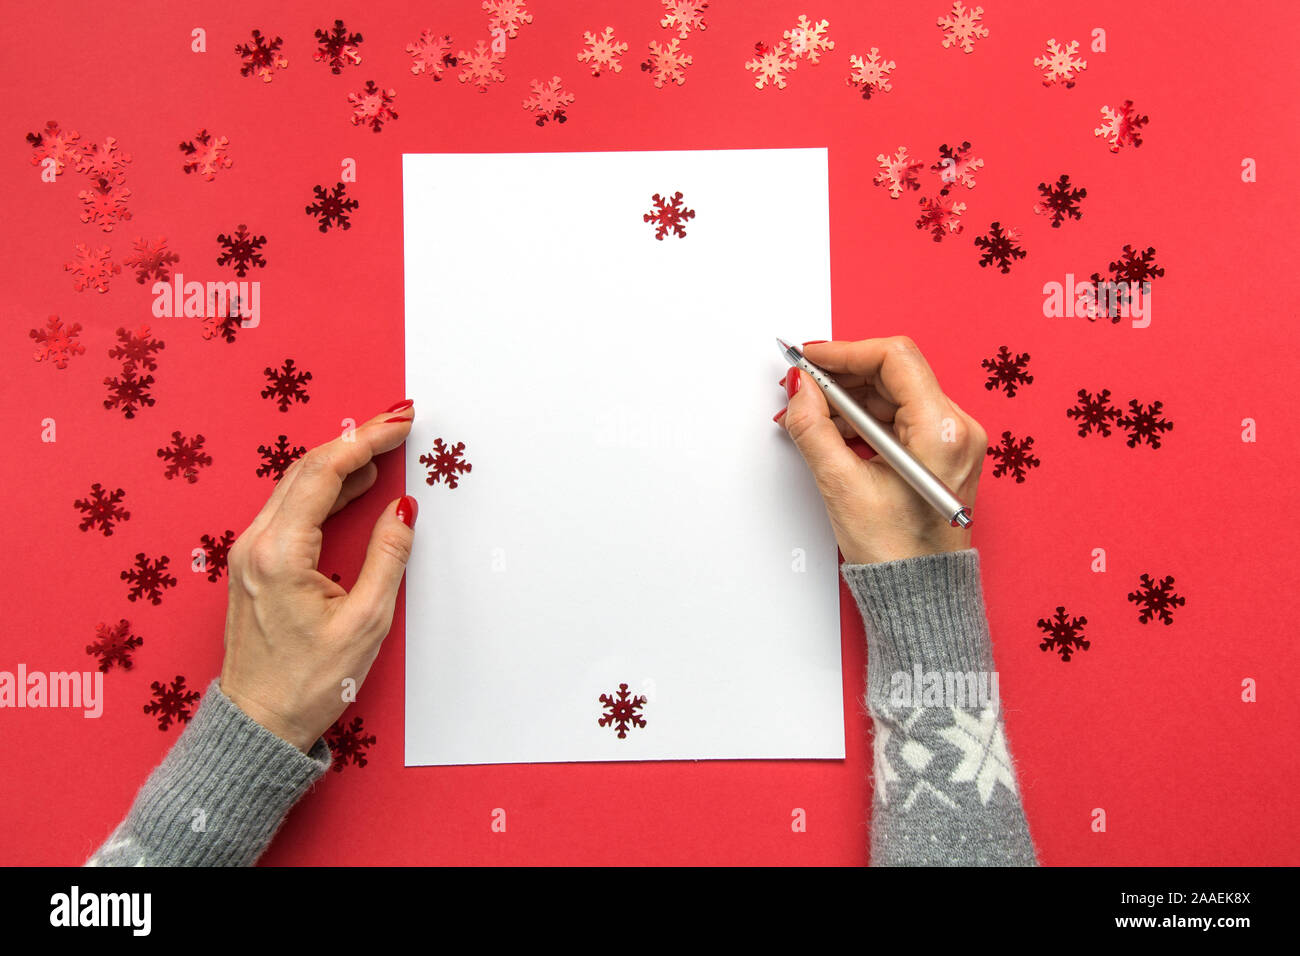 La donna gli obiettivi di scrittura, checklist, piani e sogni. Felice Anno Nuovo. La lista dei desideri per Natale. Elenco impegni per l'anno 2020 su rosso Holiday decor. Spese regalo Foto Stock